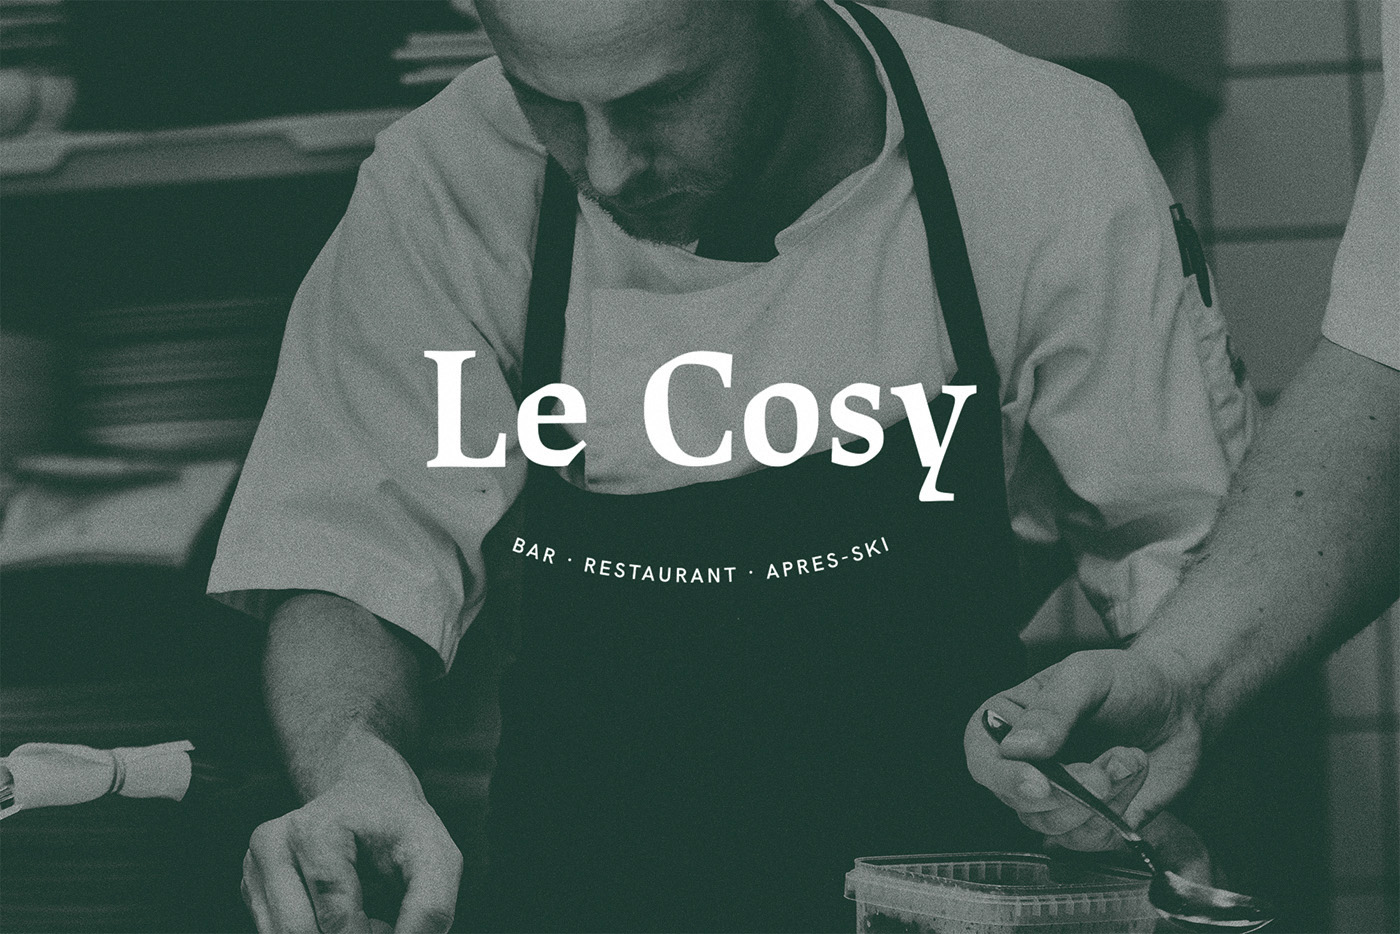 Le Cosy Bar Identidad corporativa logo restaurante